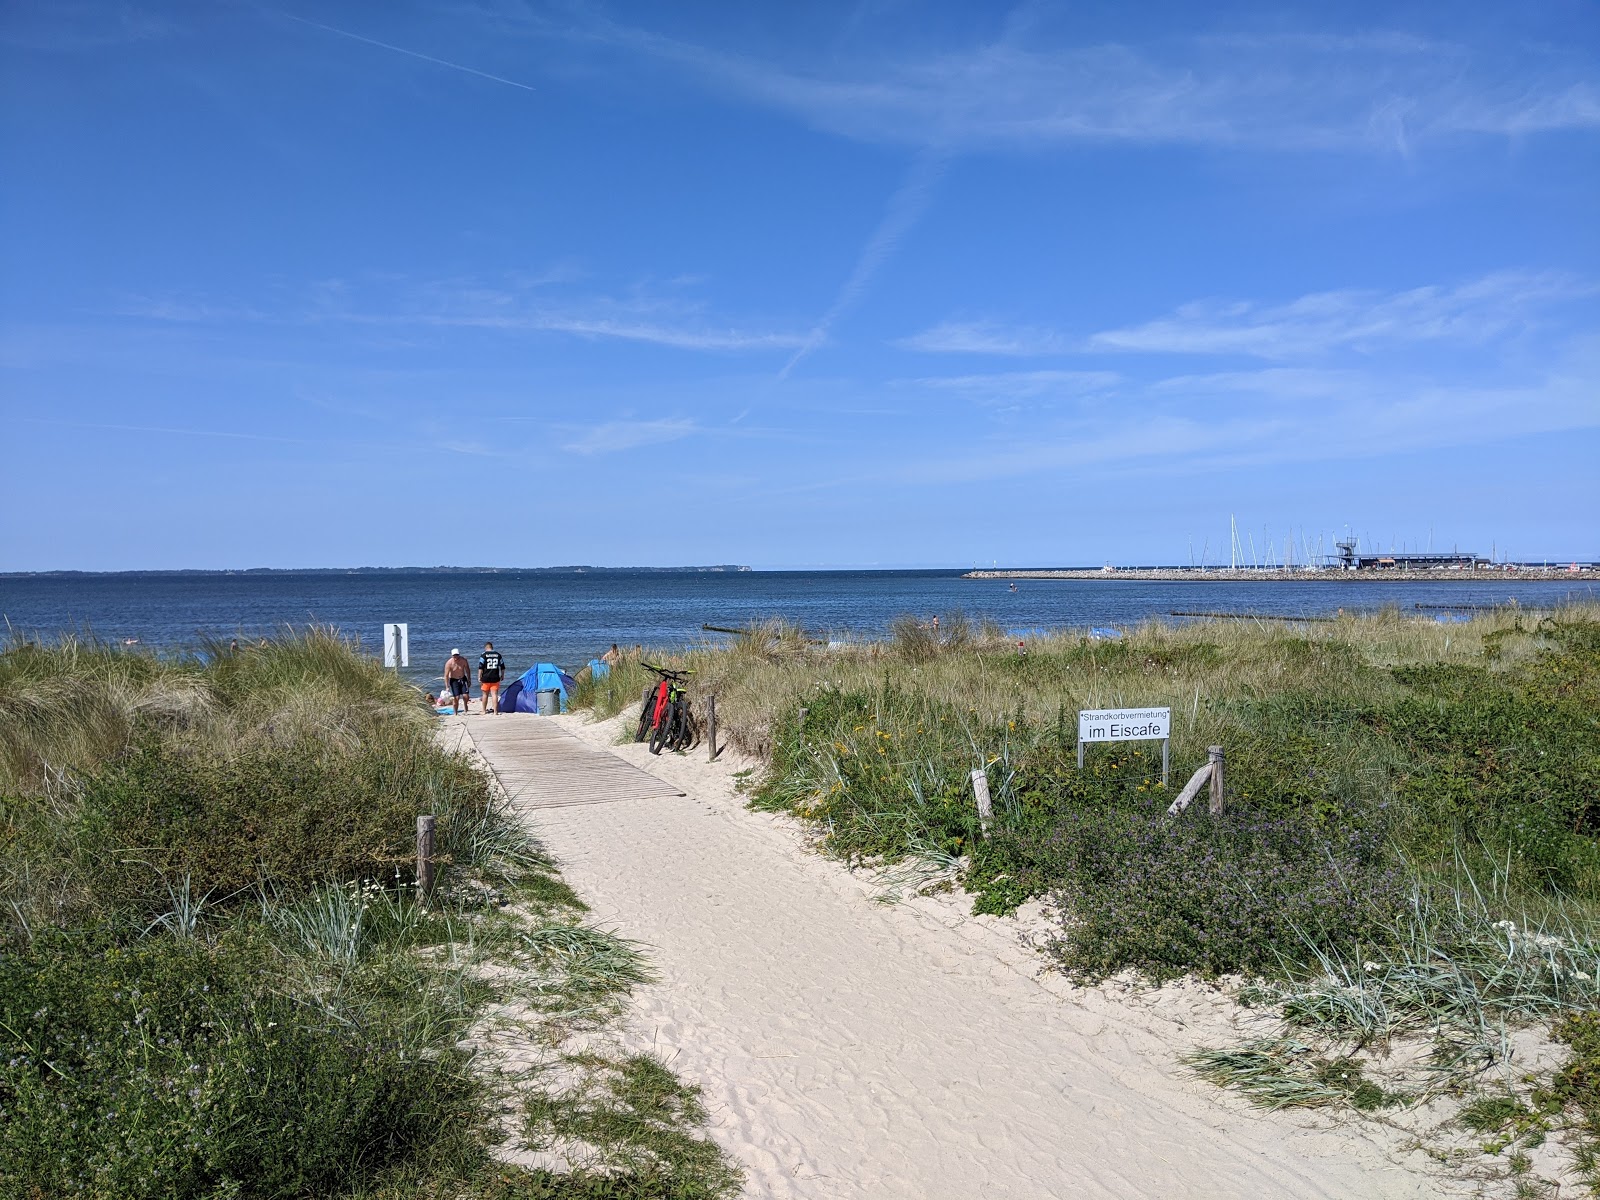 Glowe Plajı'in fotoğrafı geniş plaj ile birlikte